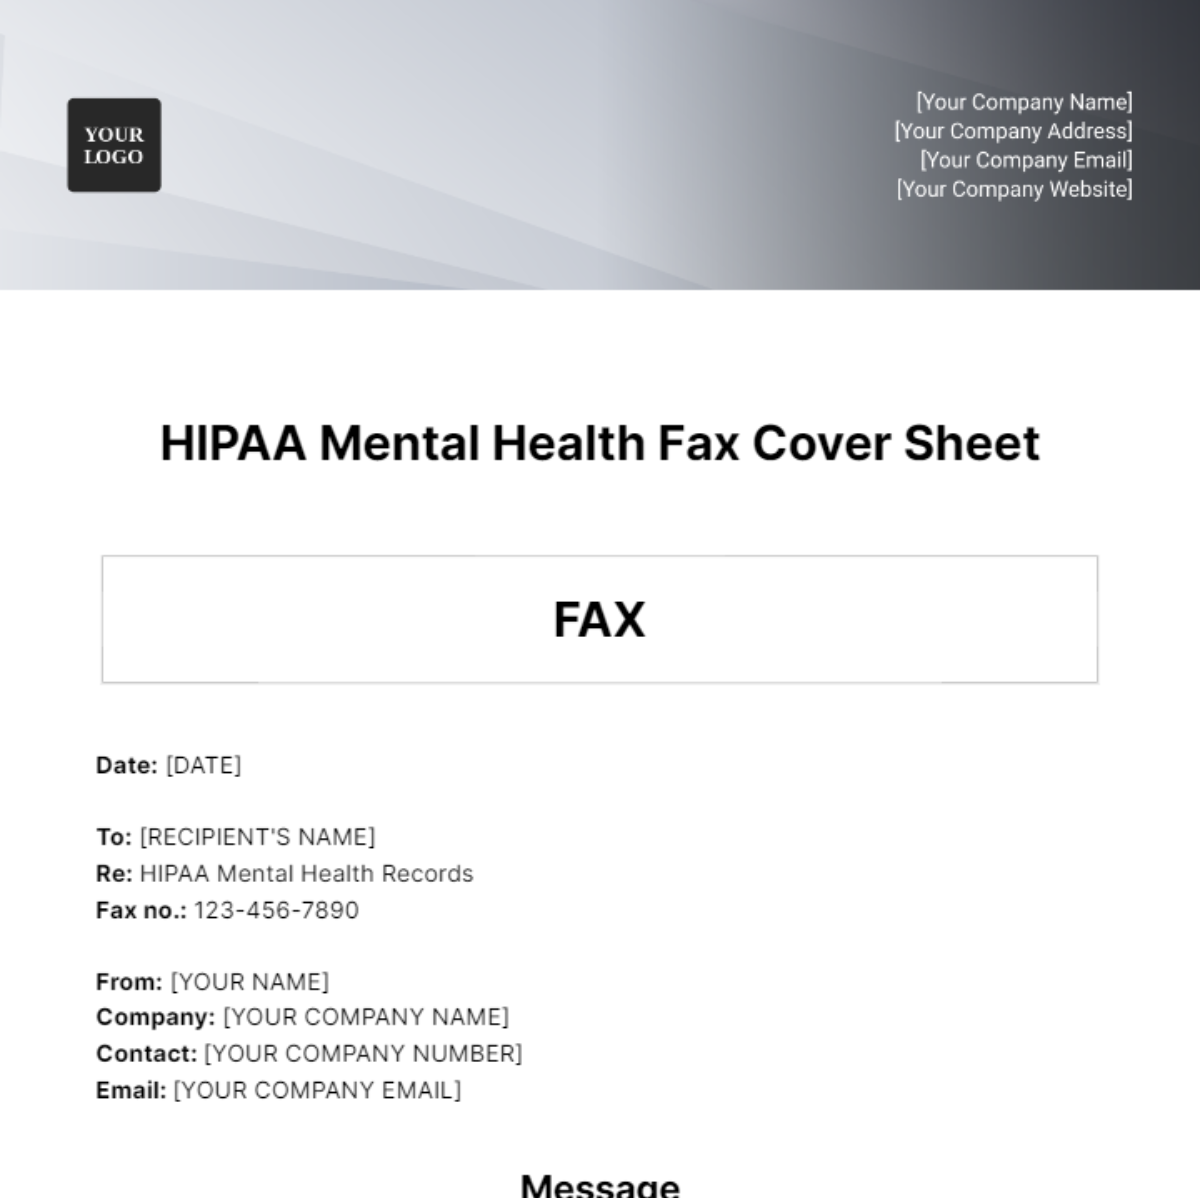 HIPAA Mental Health Fax Cover Sheet Template